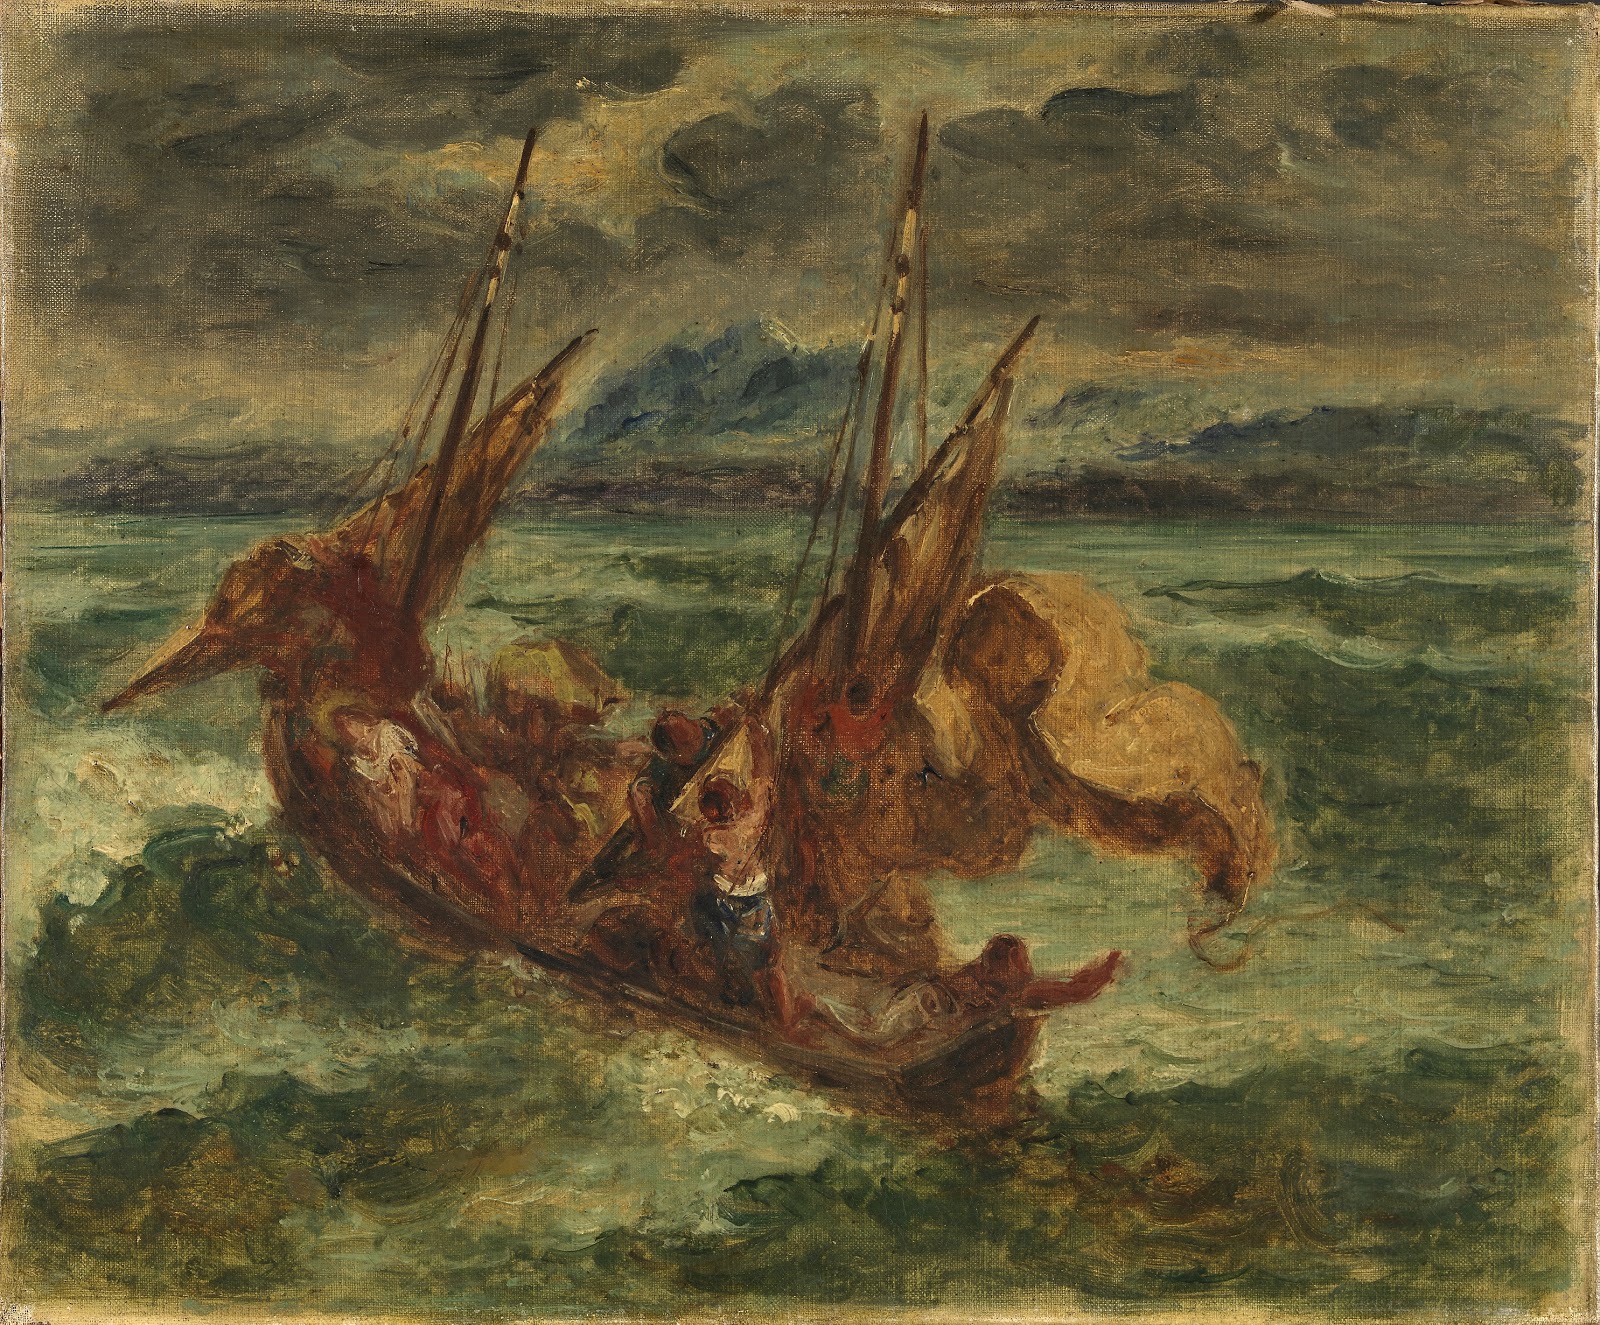 Eugene+Delacroix-1798-1863 (144).jpg